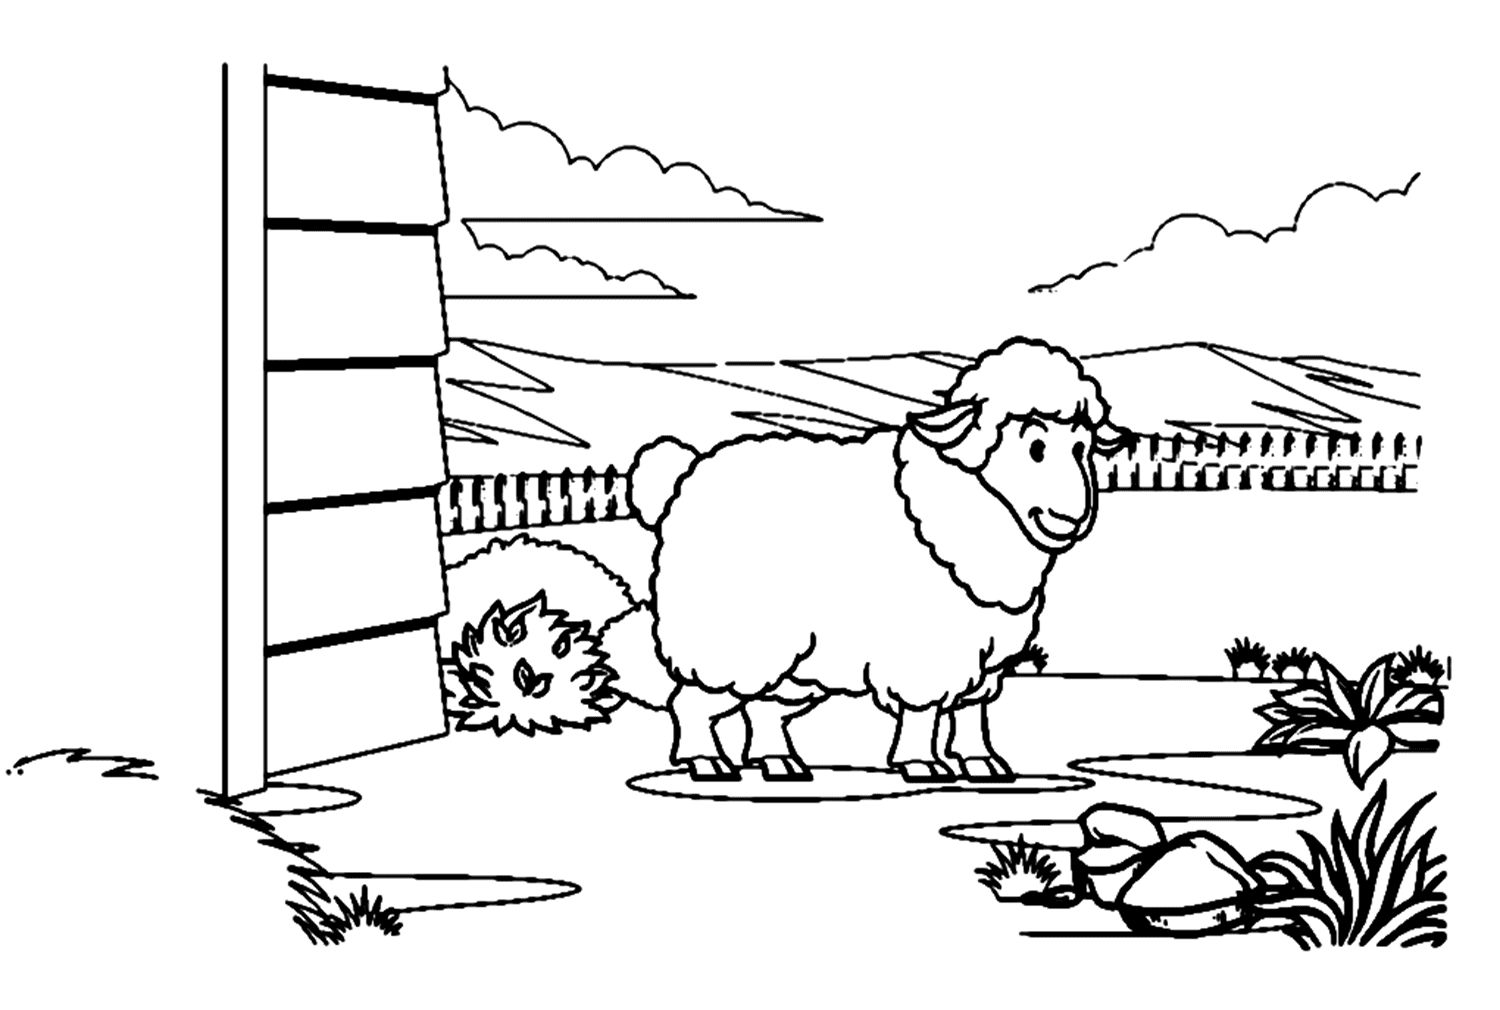 Lam In De Schuur van Lamb